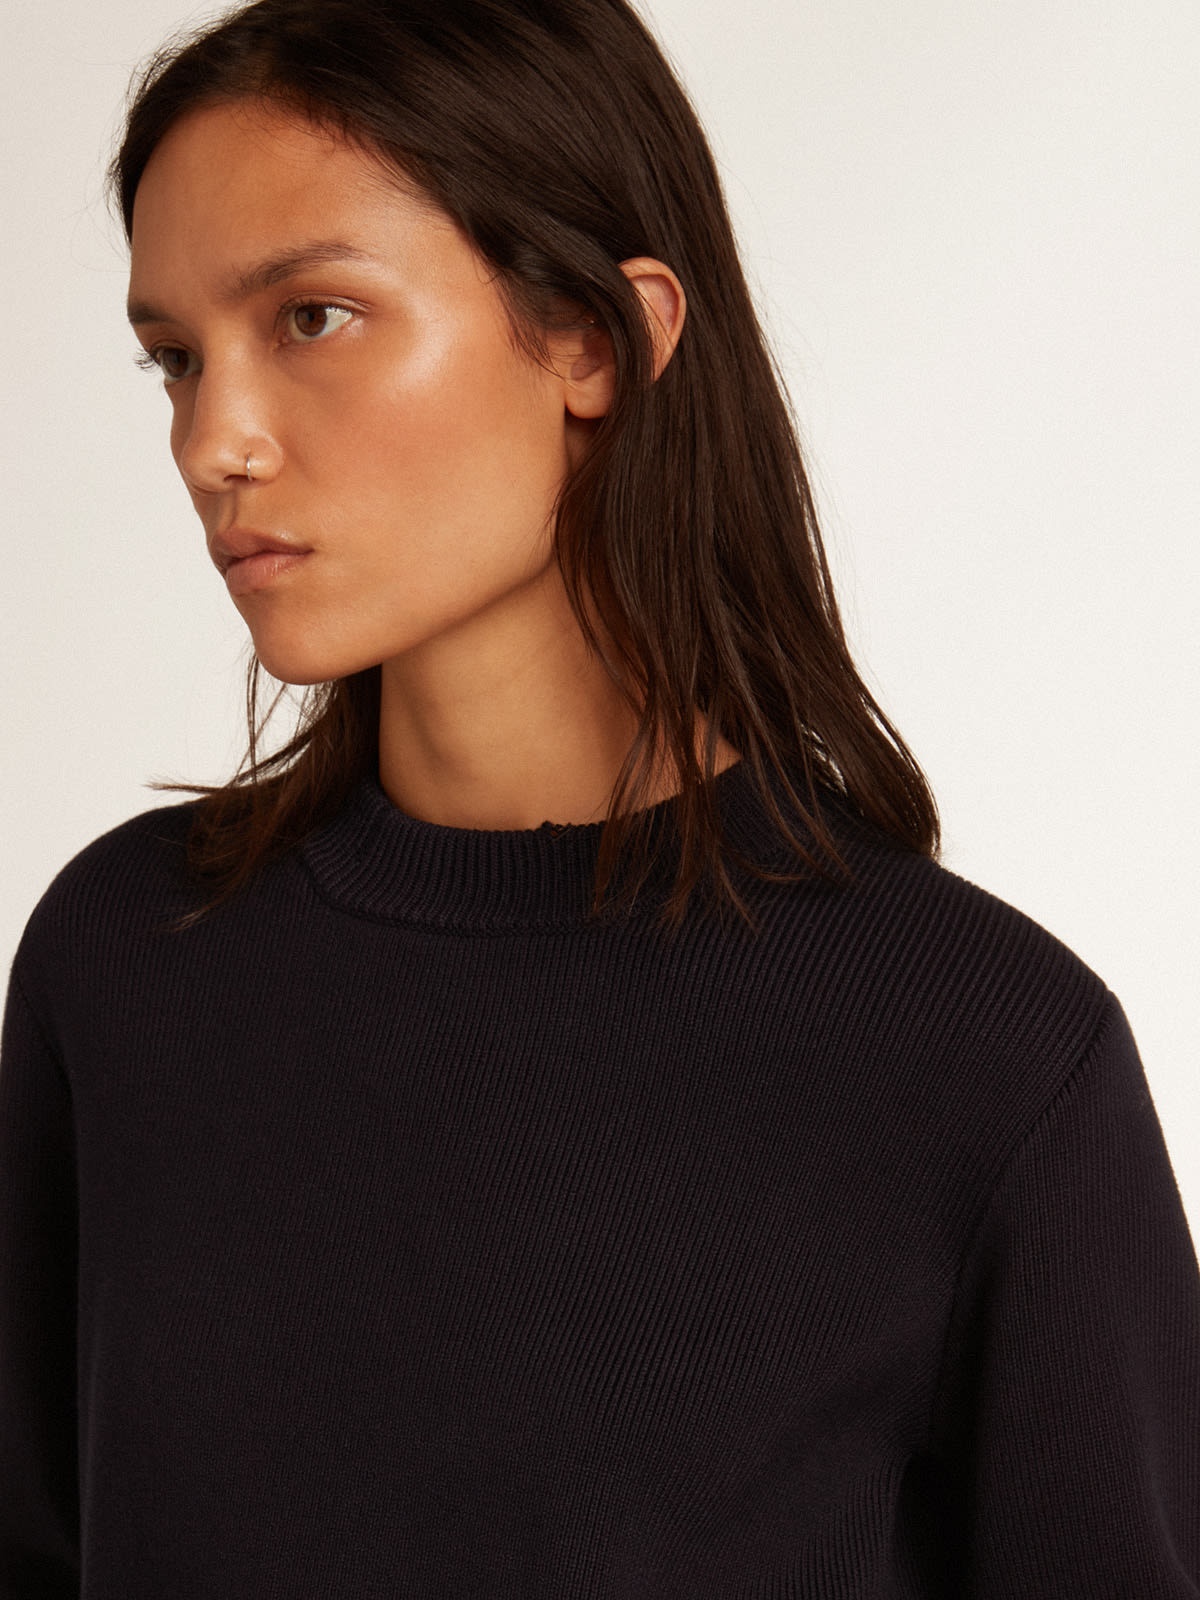 Women’s round-neck sweater in dark blue cotton - 2